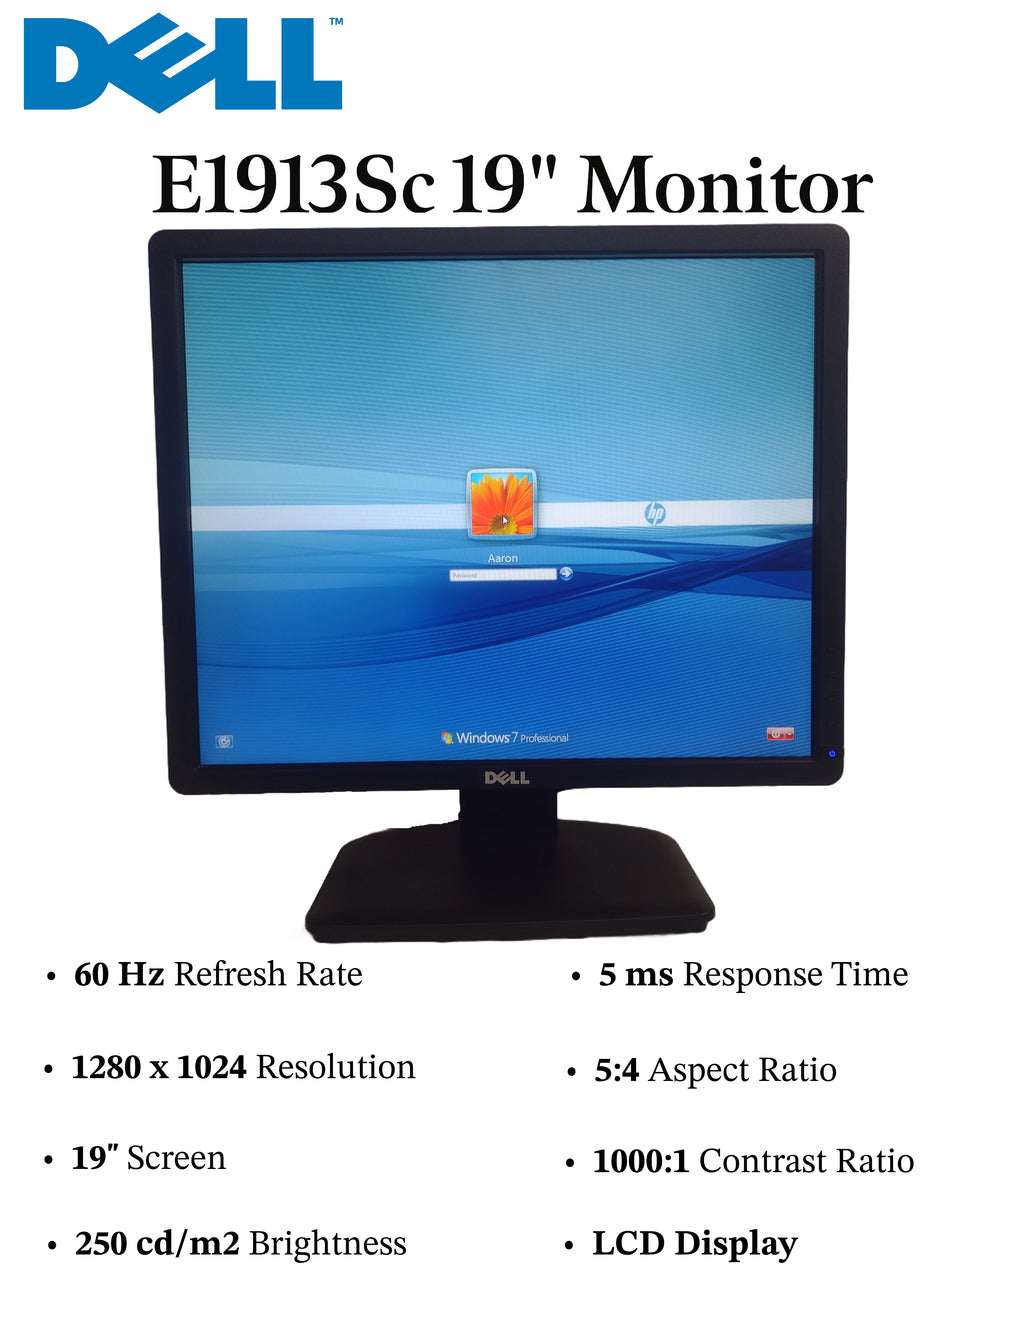 DELL E1913Sc 19" 1280 x 1024 5:4 LCD Monitor